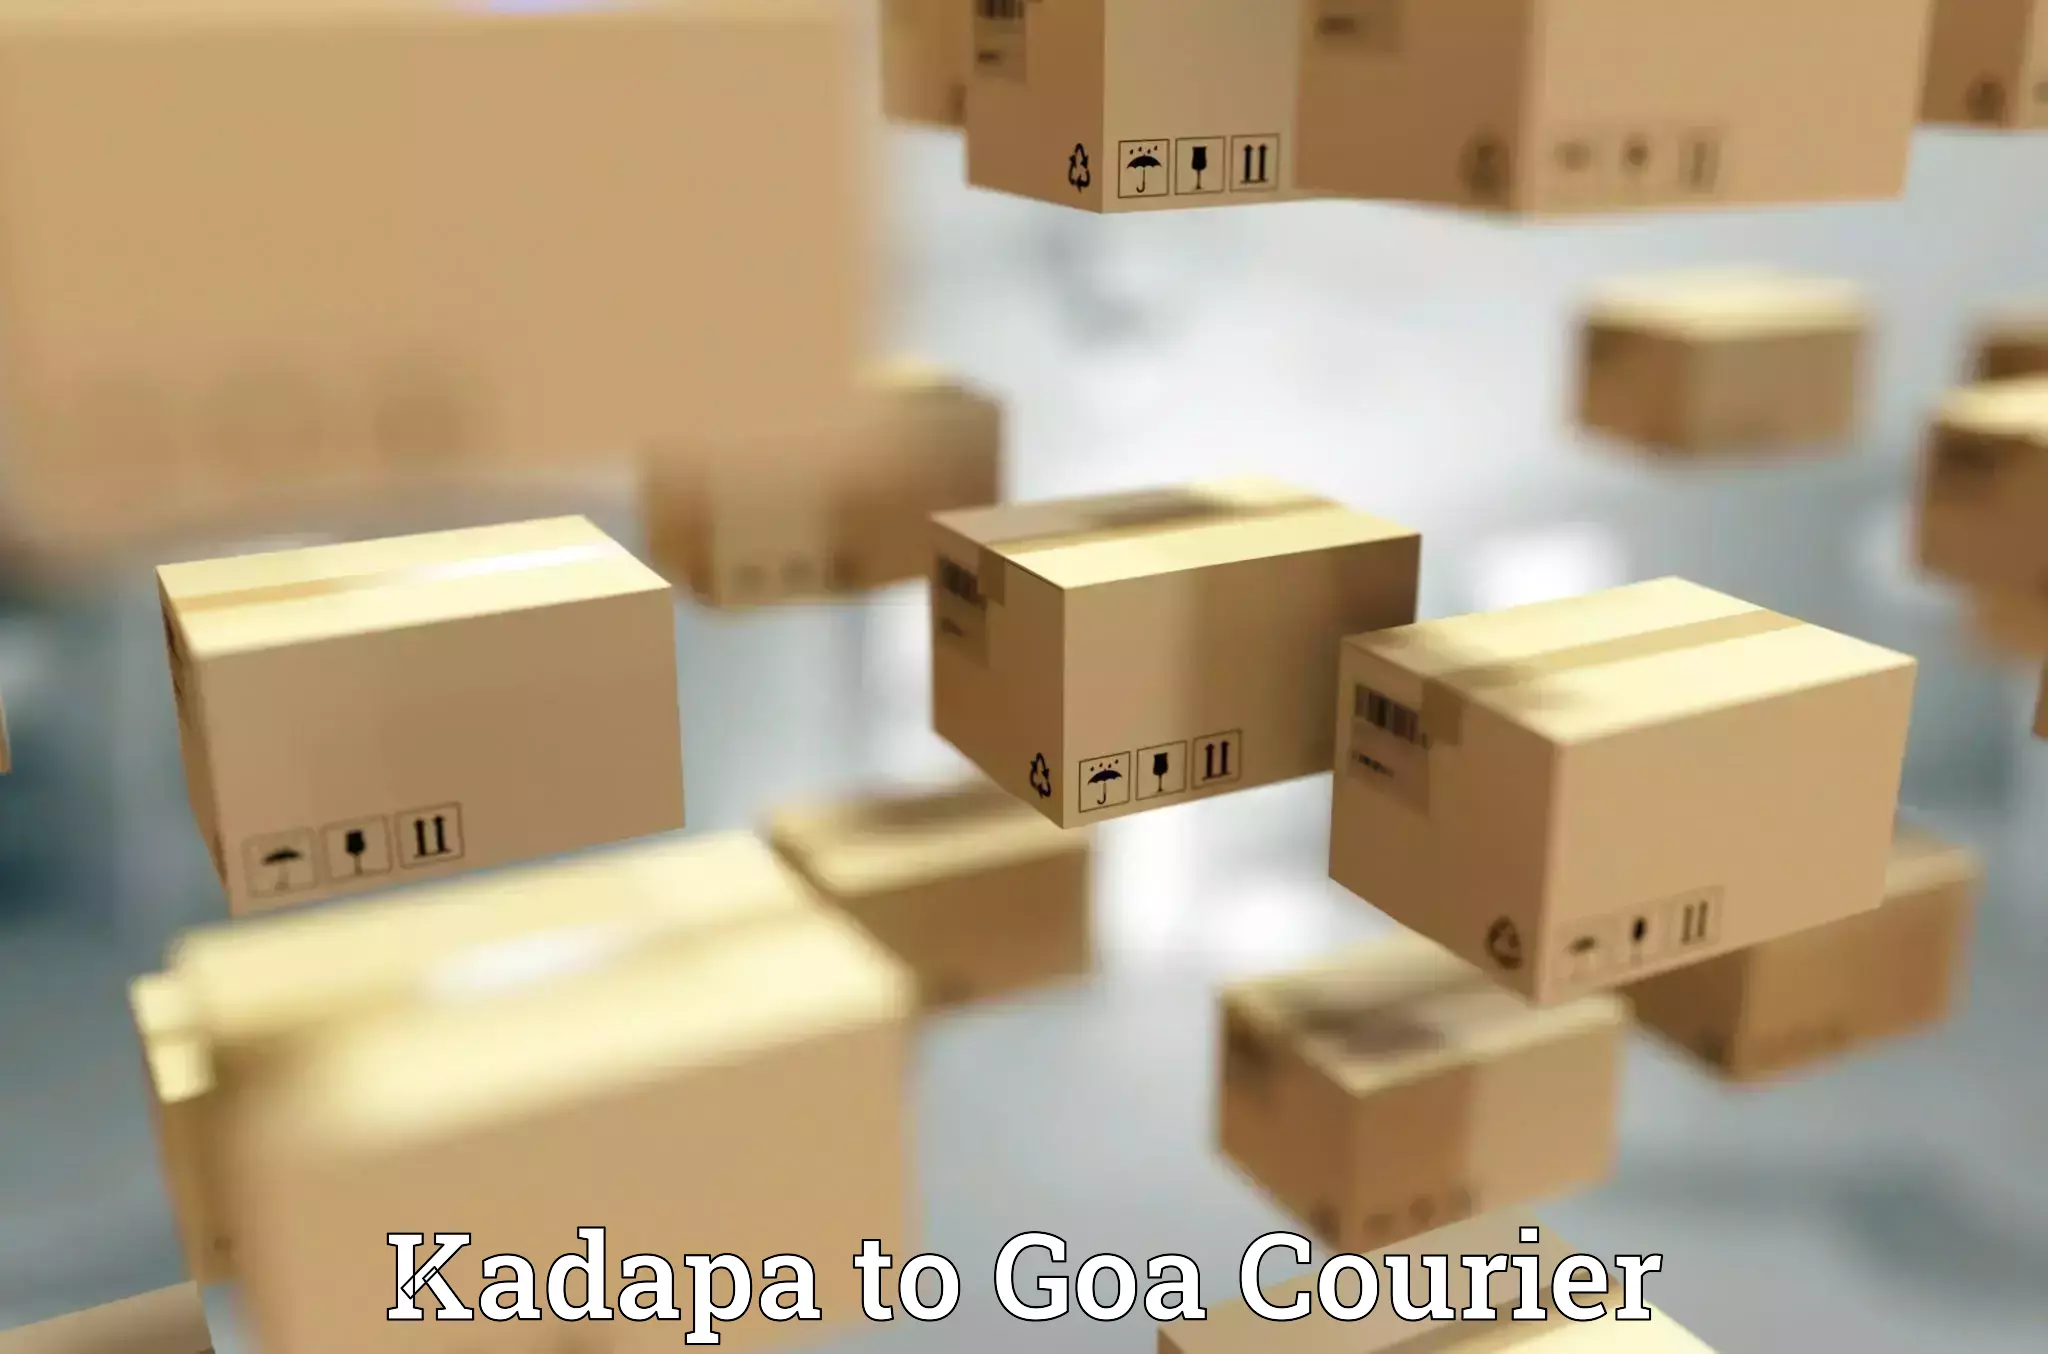 Local courier options Kadapa to Ponda